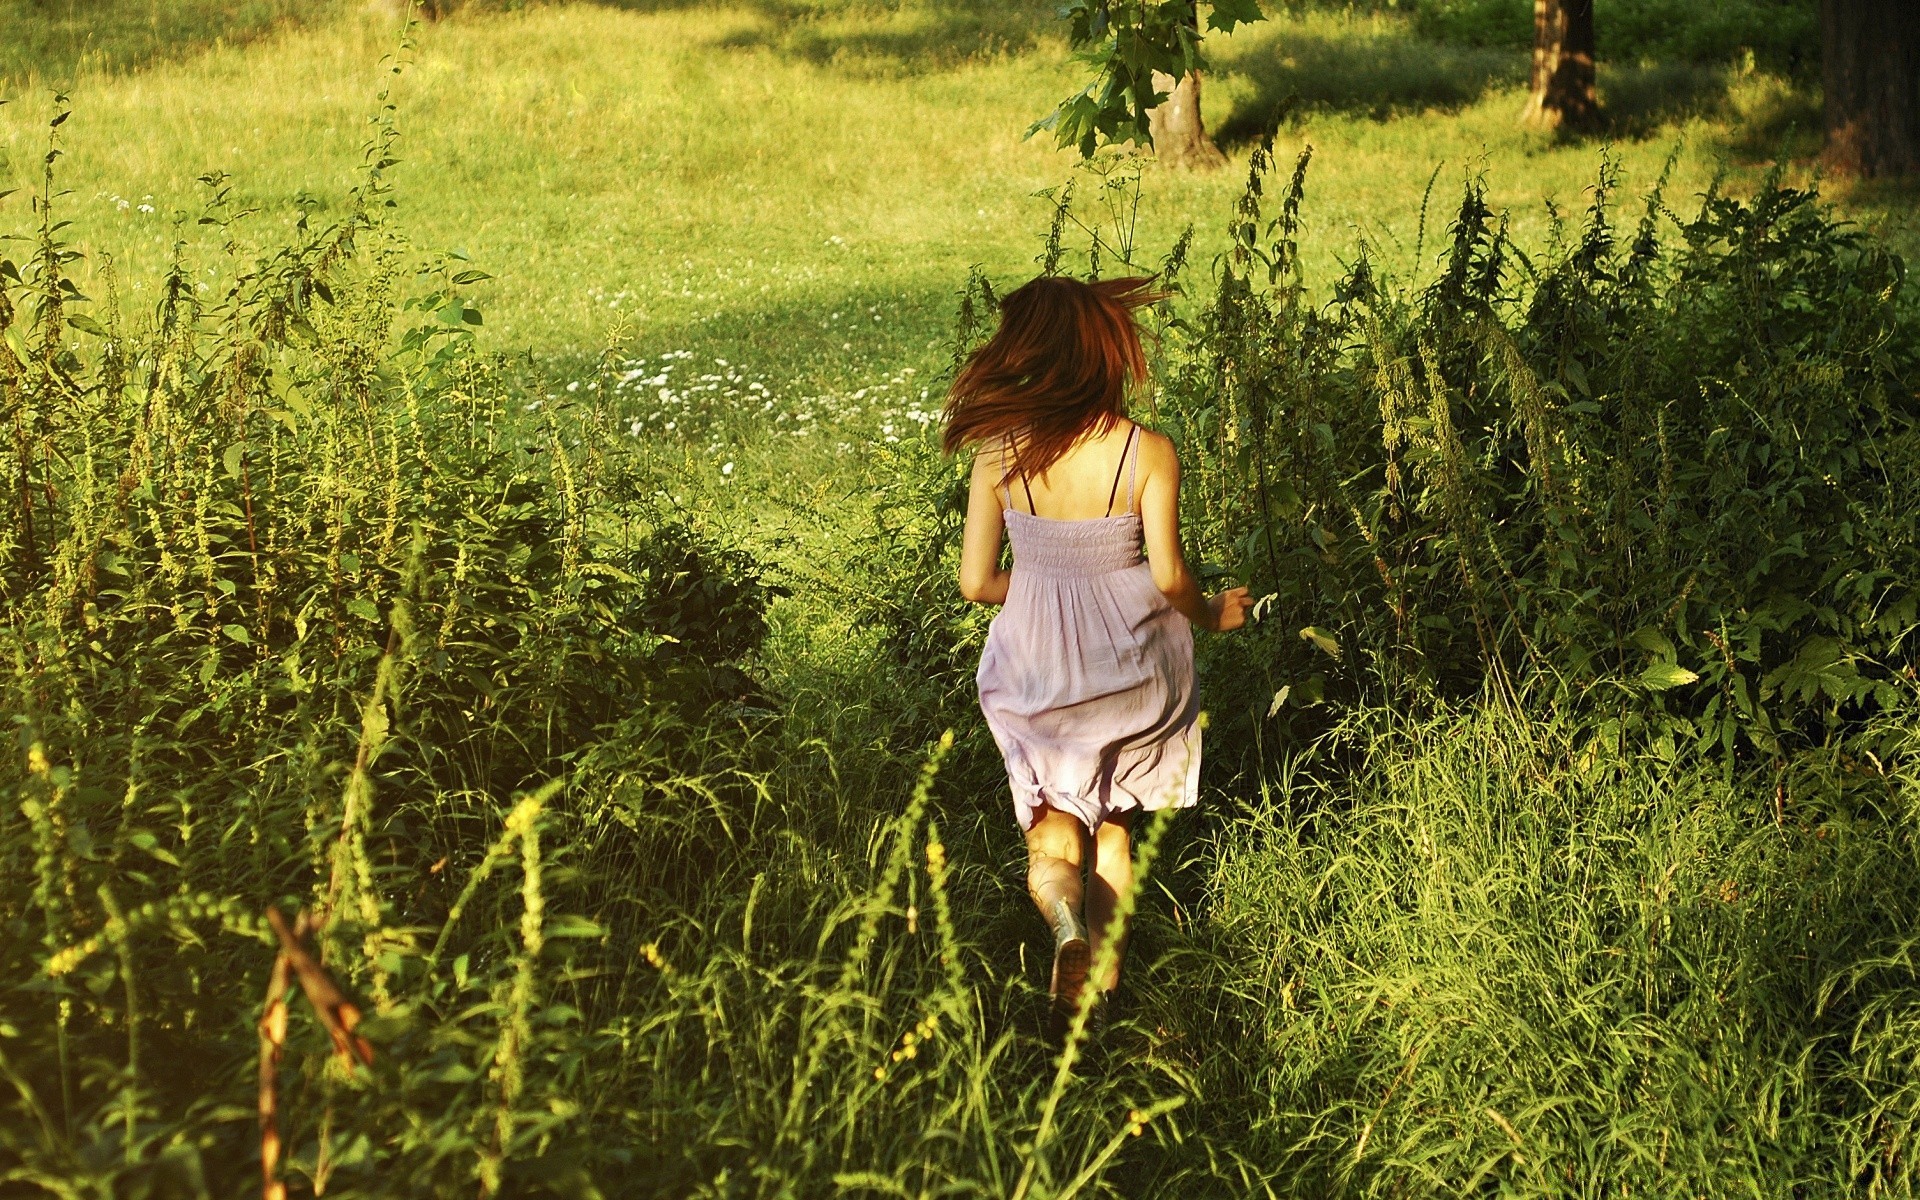 Пышка гуляет по скошенной траве в поле